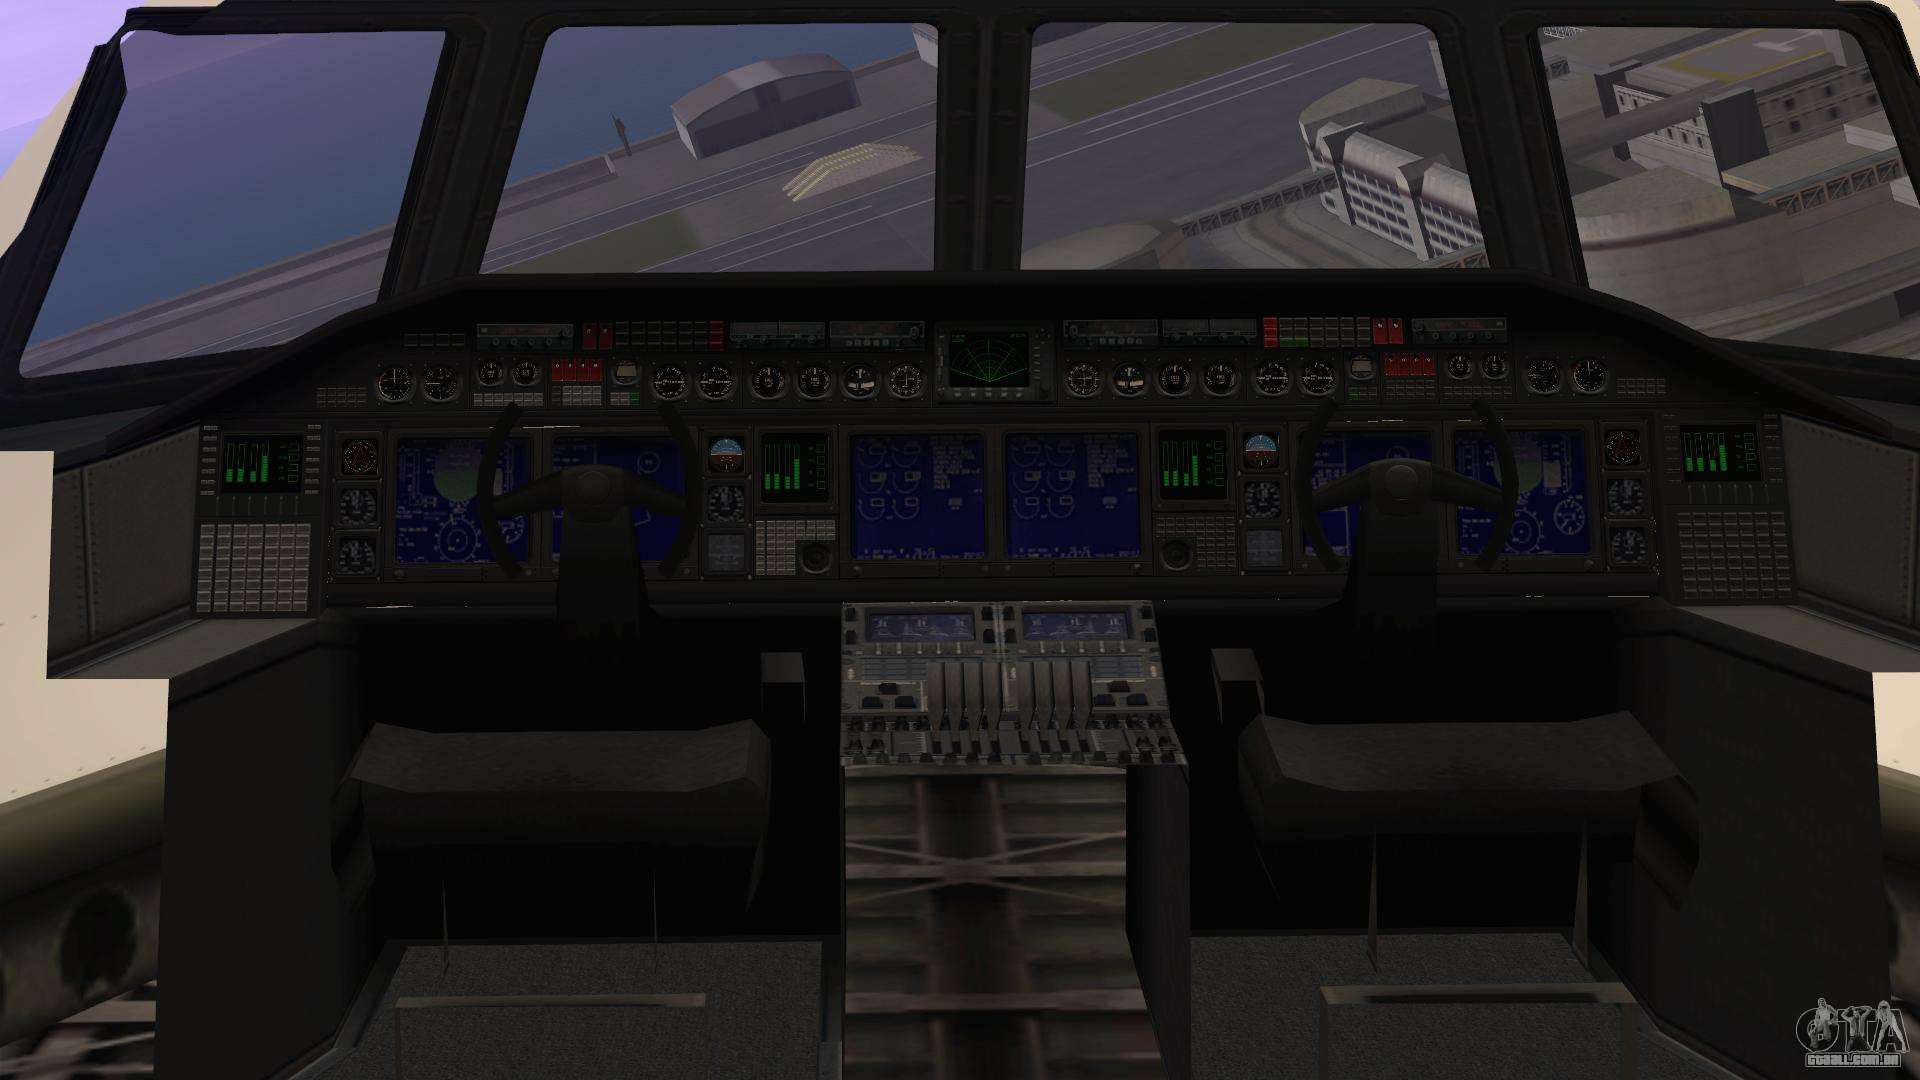 GTA Online: Como Pegar o maior Avião do jogo CARGO PLANE! - Guia